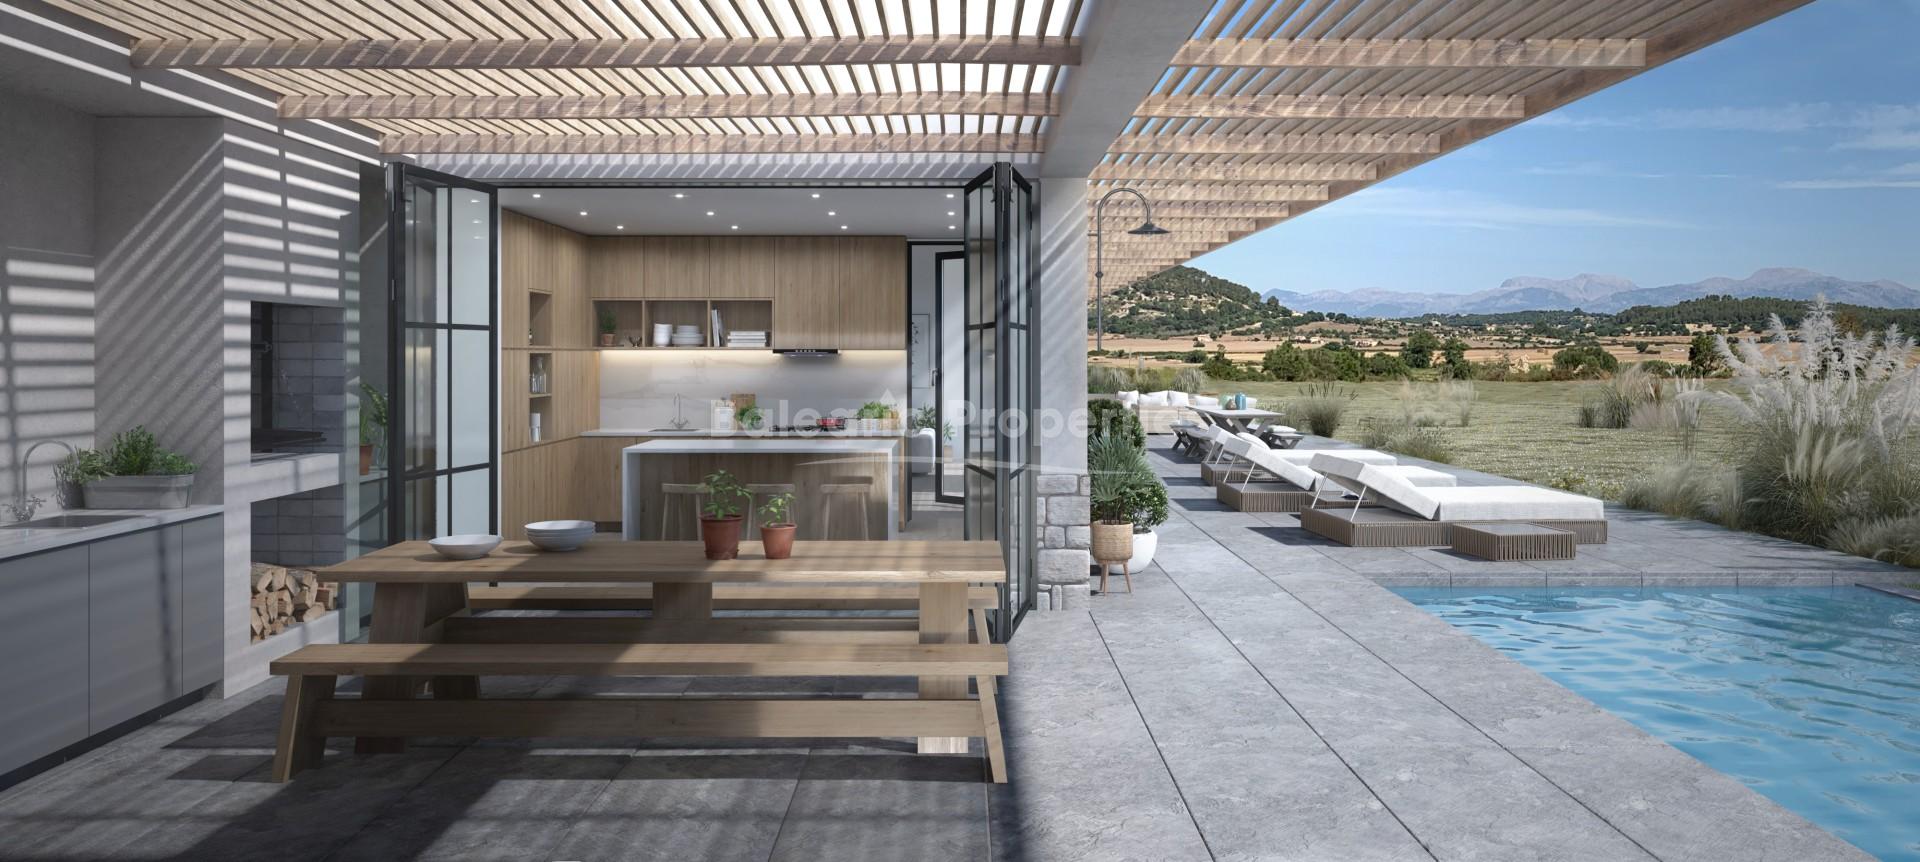 Newly built country house for sale near Sineu, Mallorca